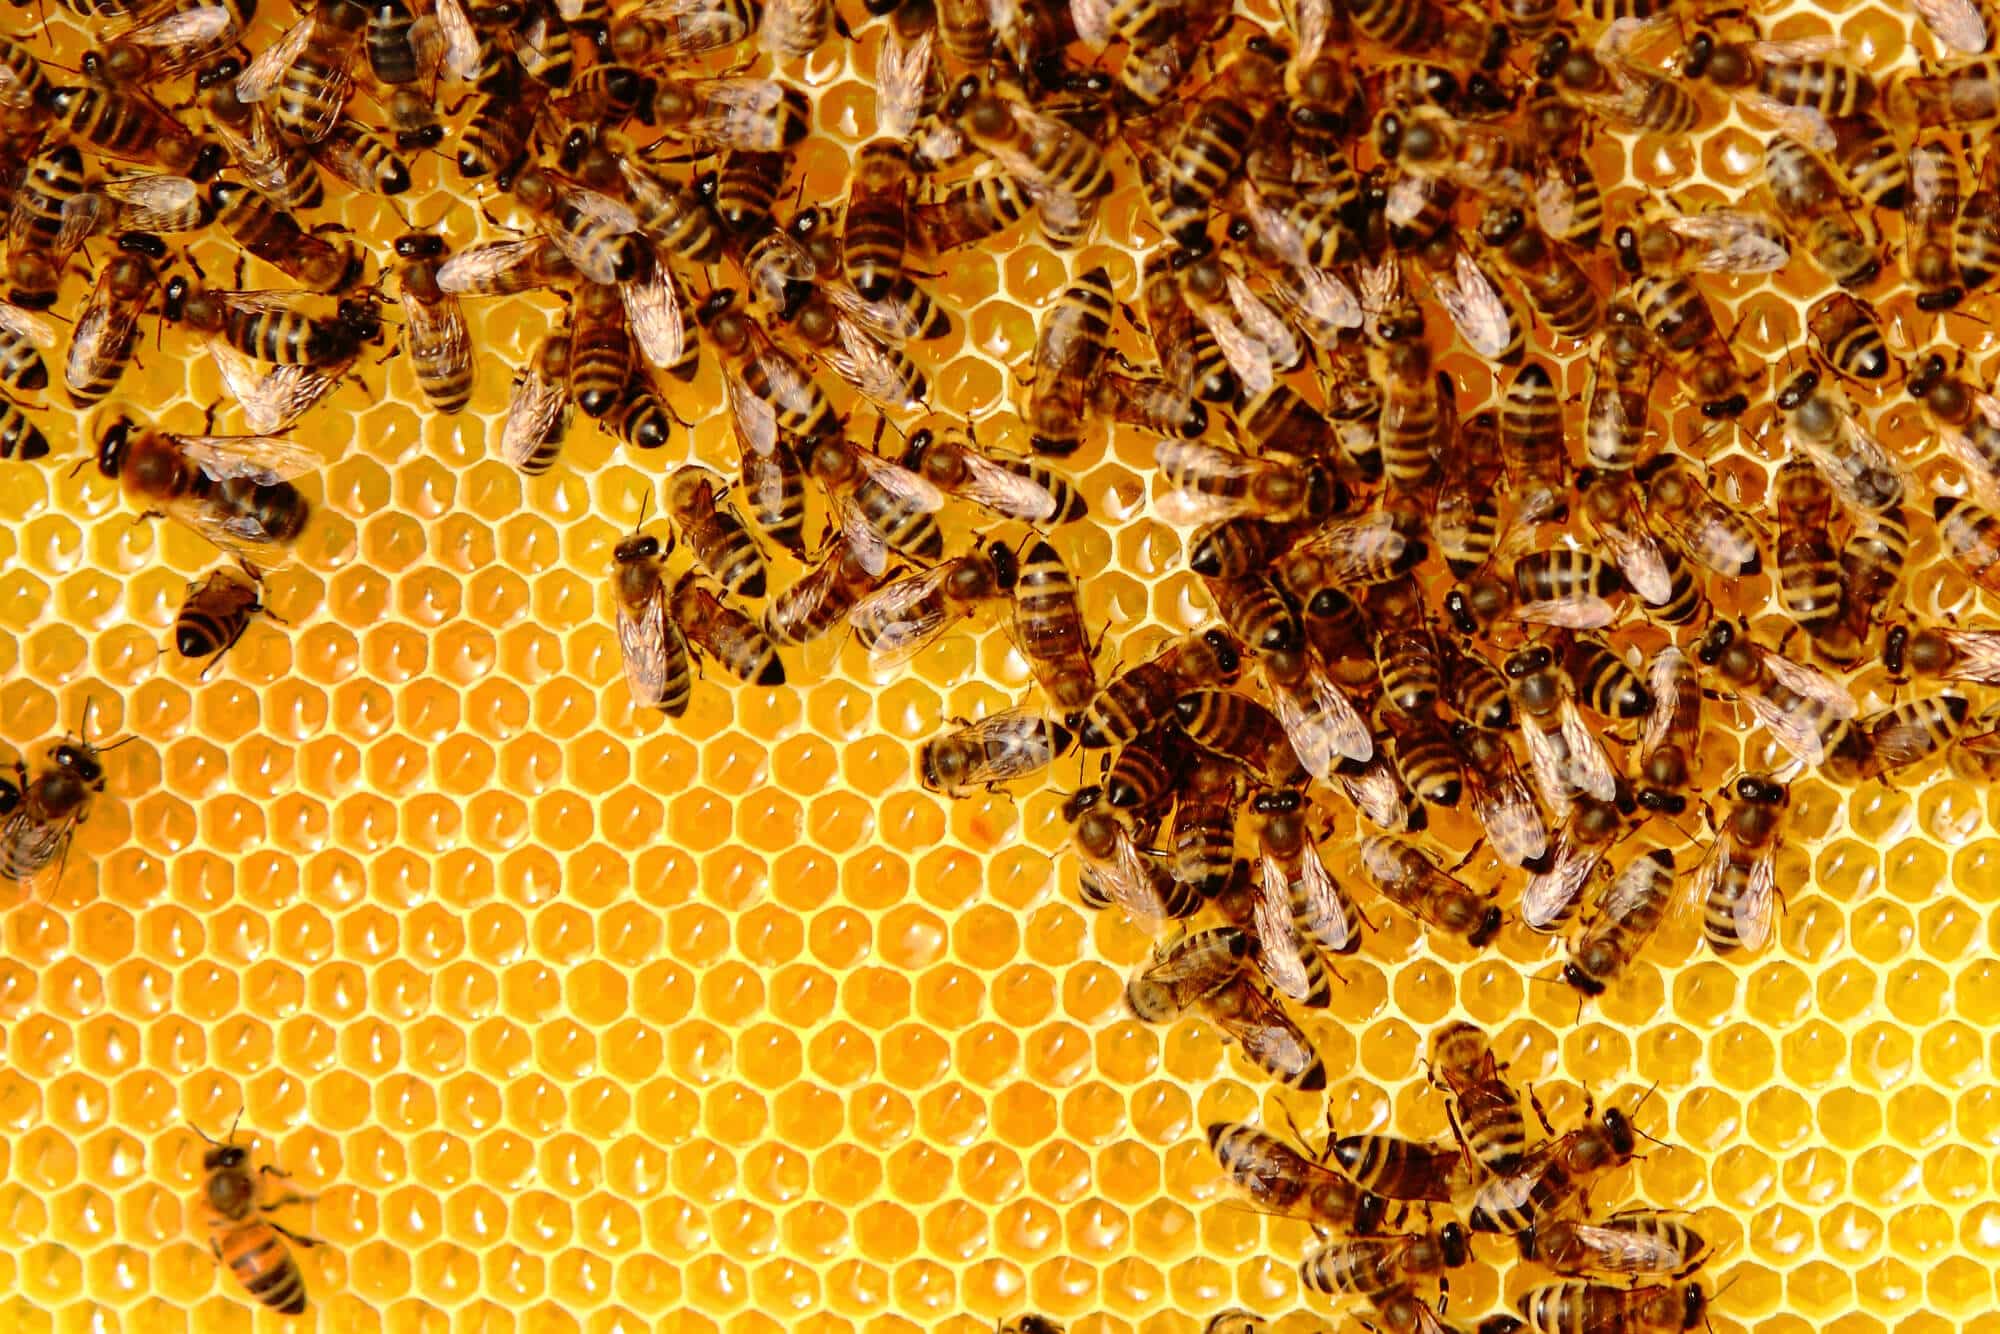 נחיל דבורים חוזר לכוורת. החוקרים גילו שהדבורים יצרו שדה חשמלי בטווח של 1,000-100 וולט למטר.  <a href="https://depositphotos.com">אילוסטרציה: depositphotos.com</a>